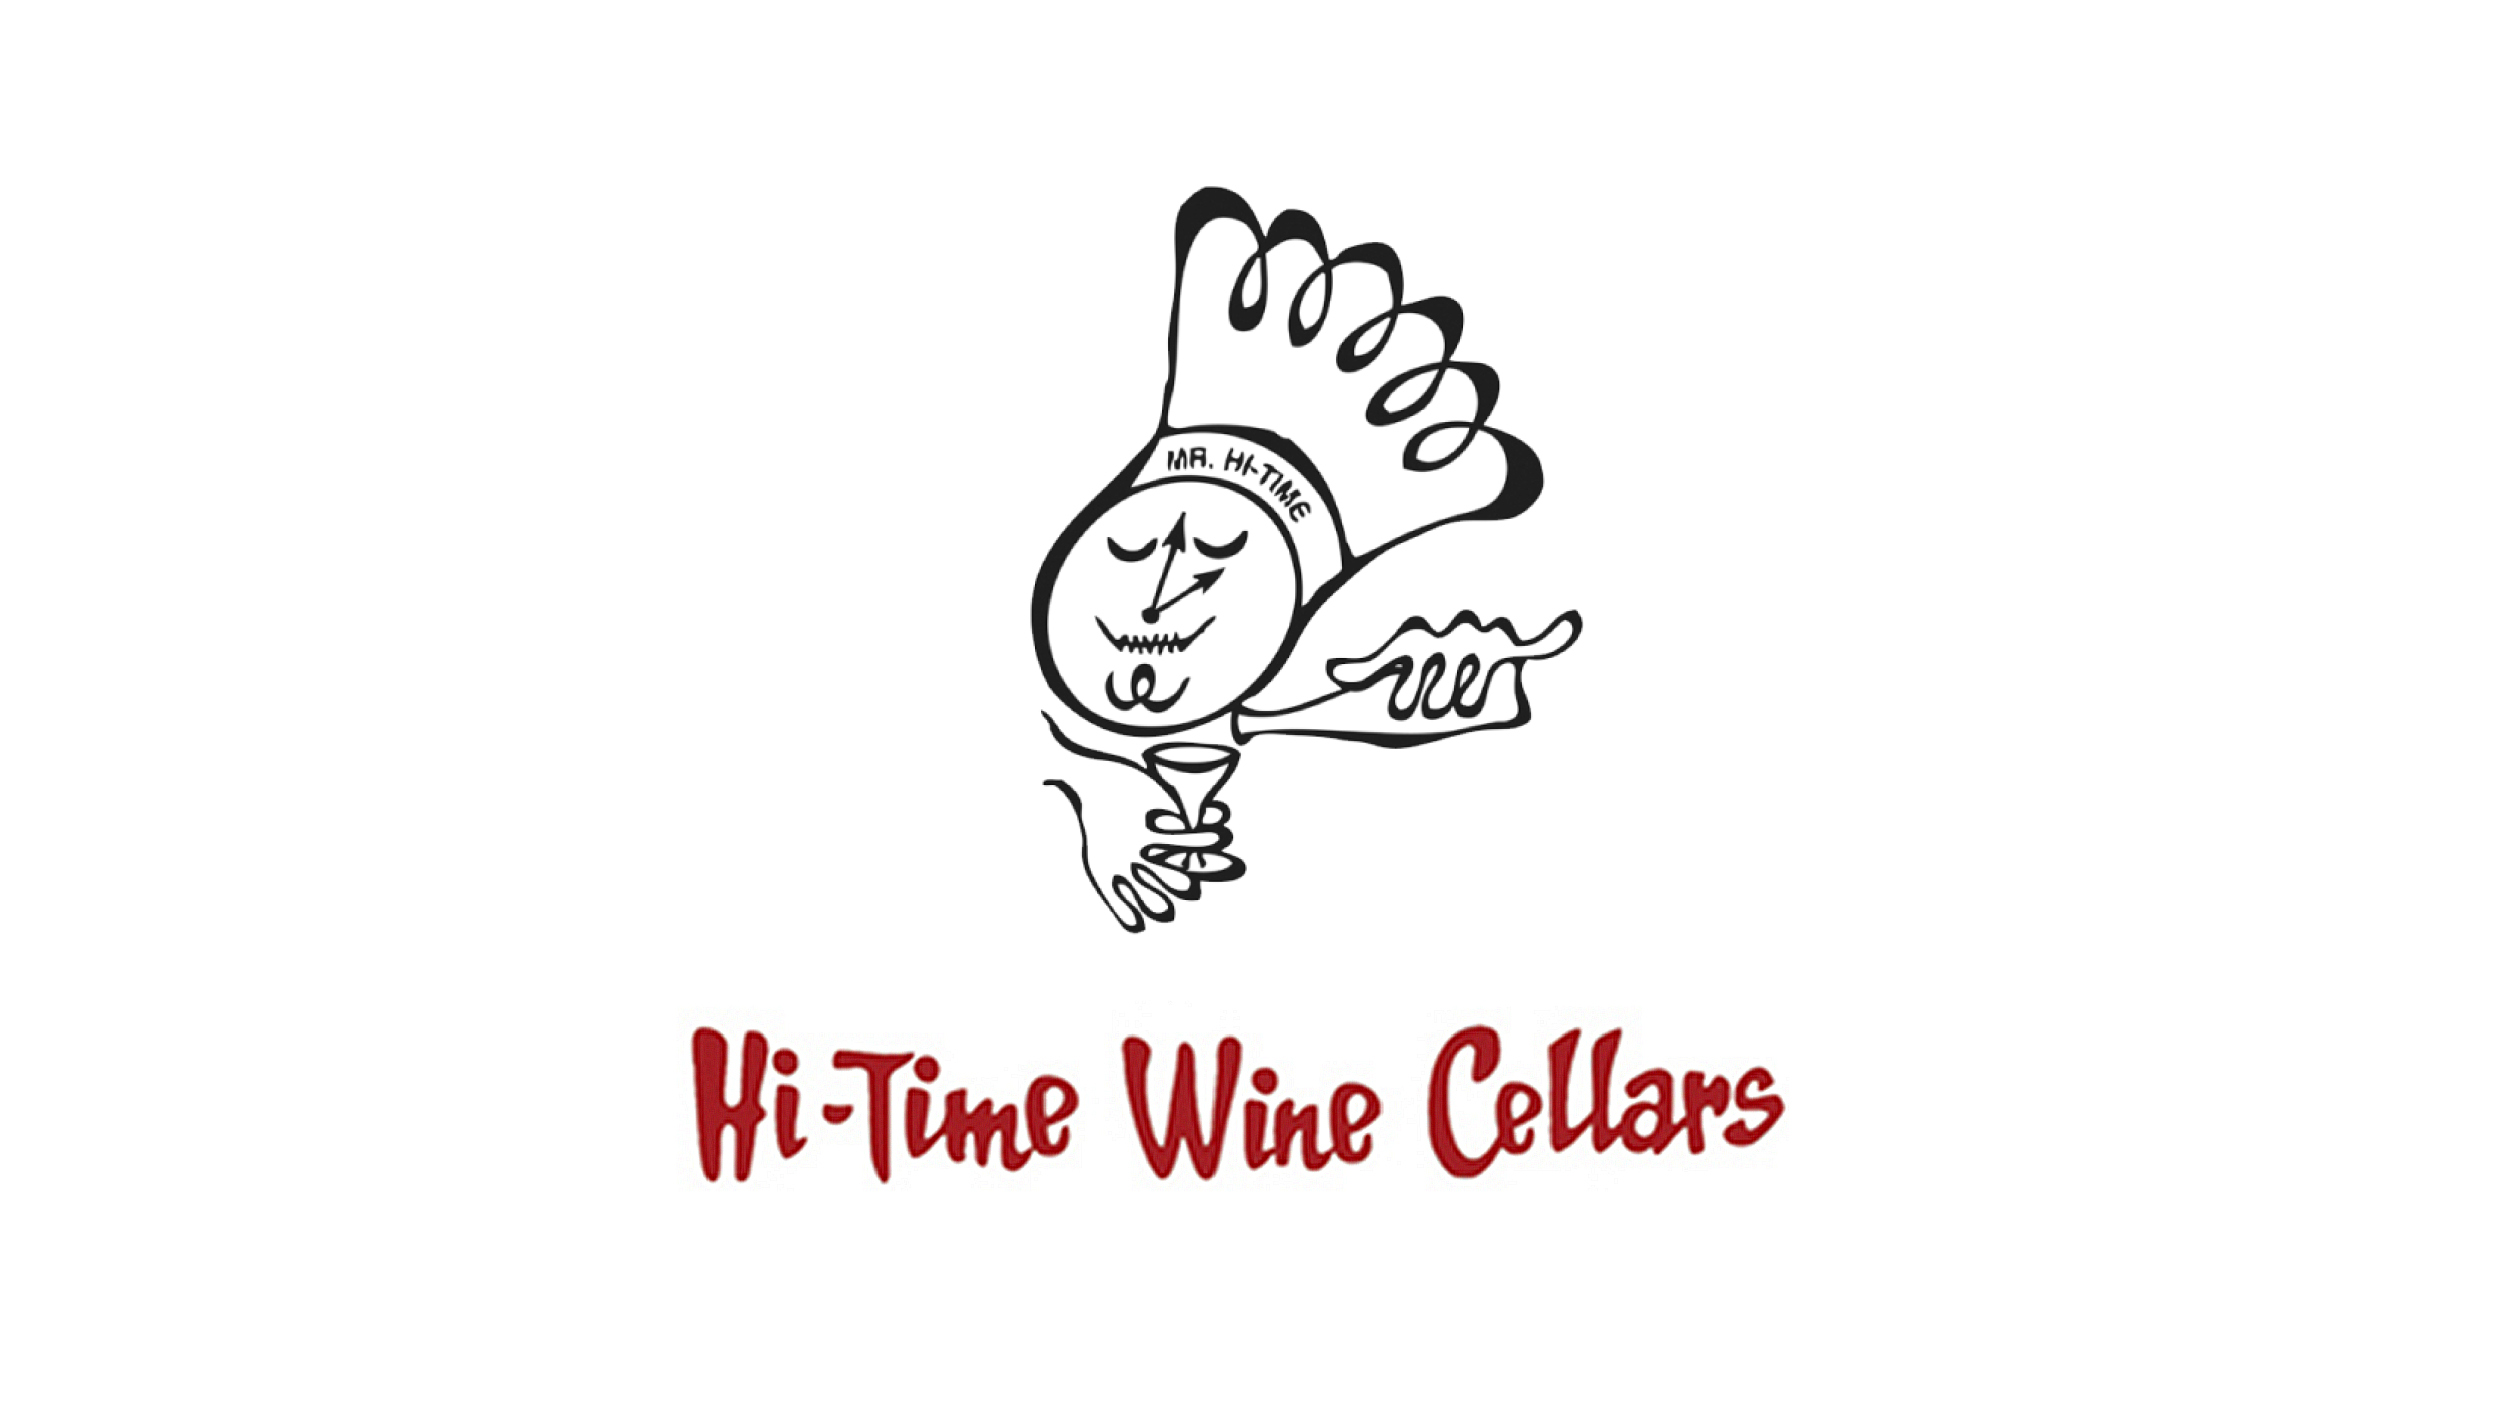 Hi-Time Wine Cellars logo